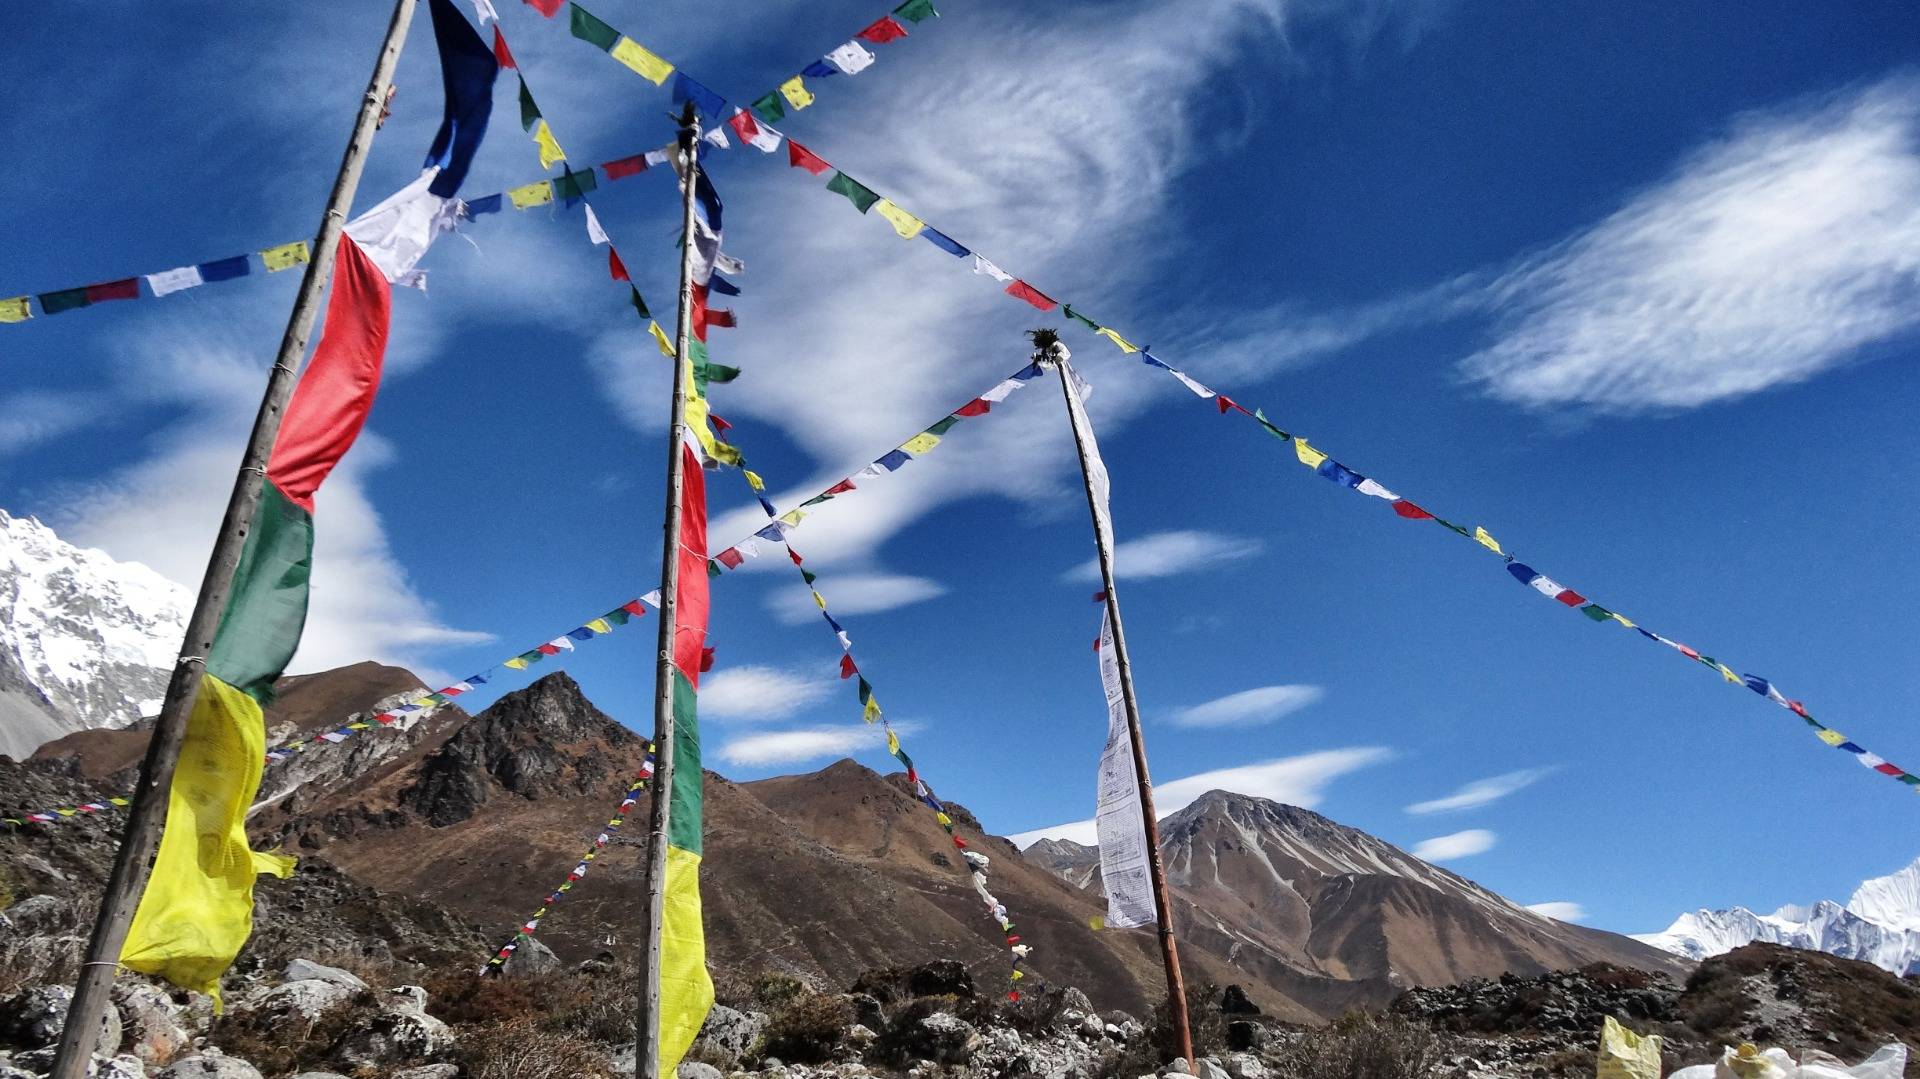 Prayer flags under Himalaya sky.